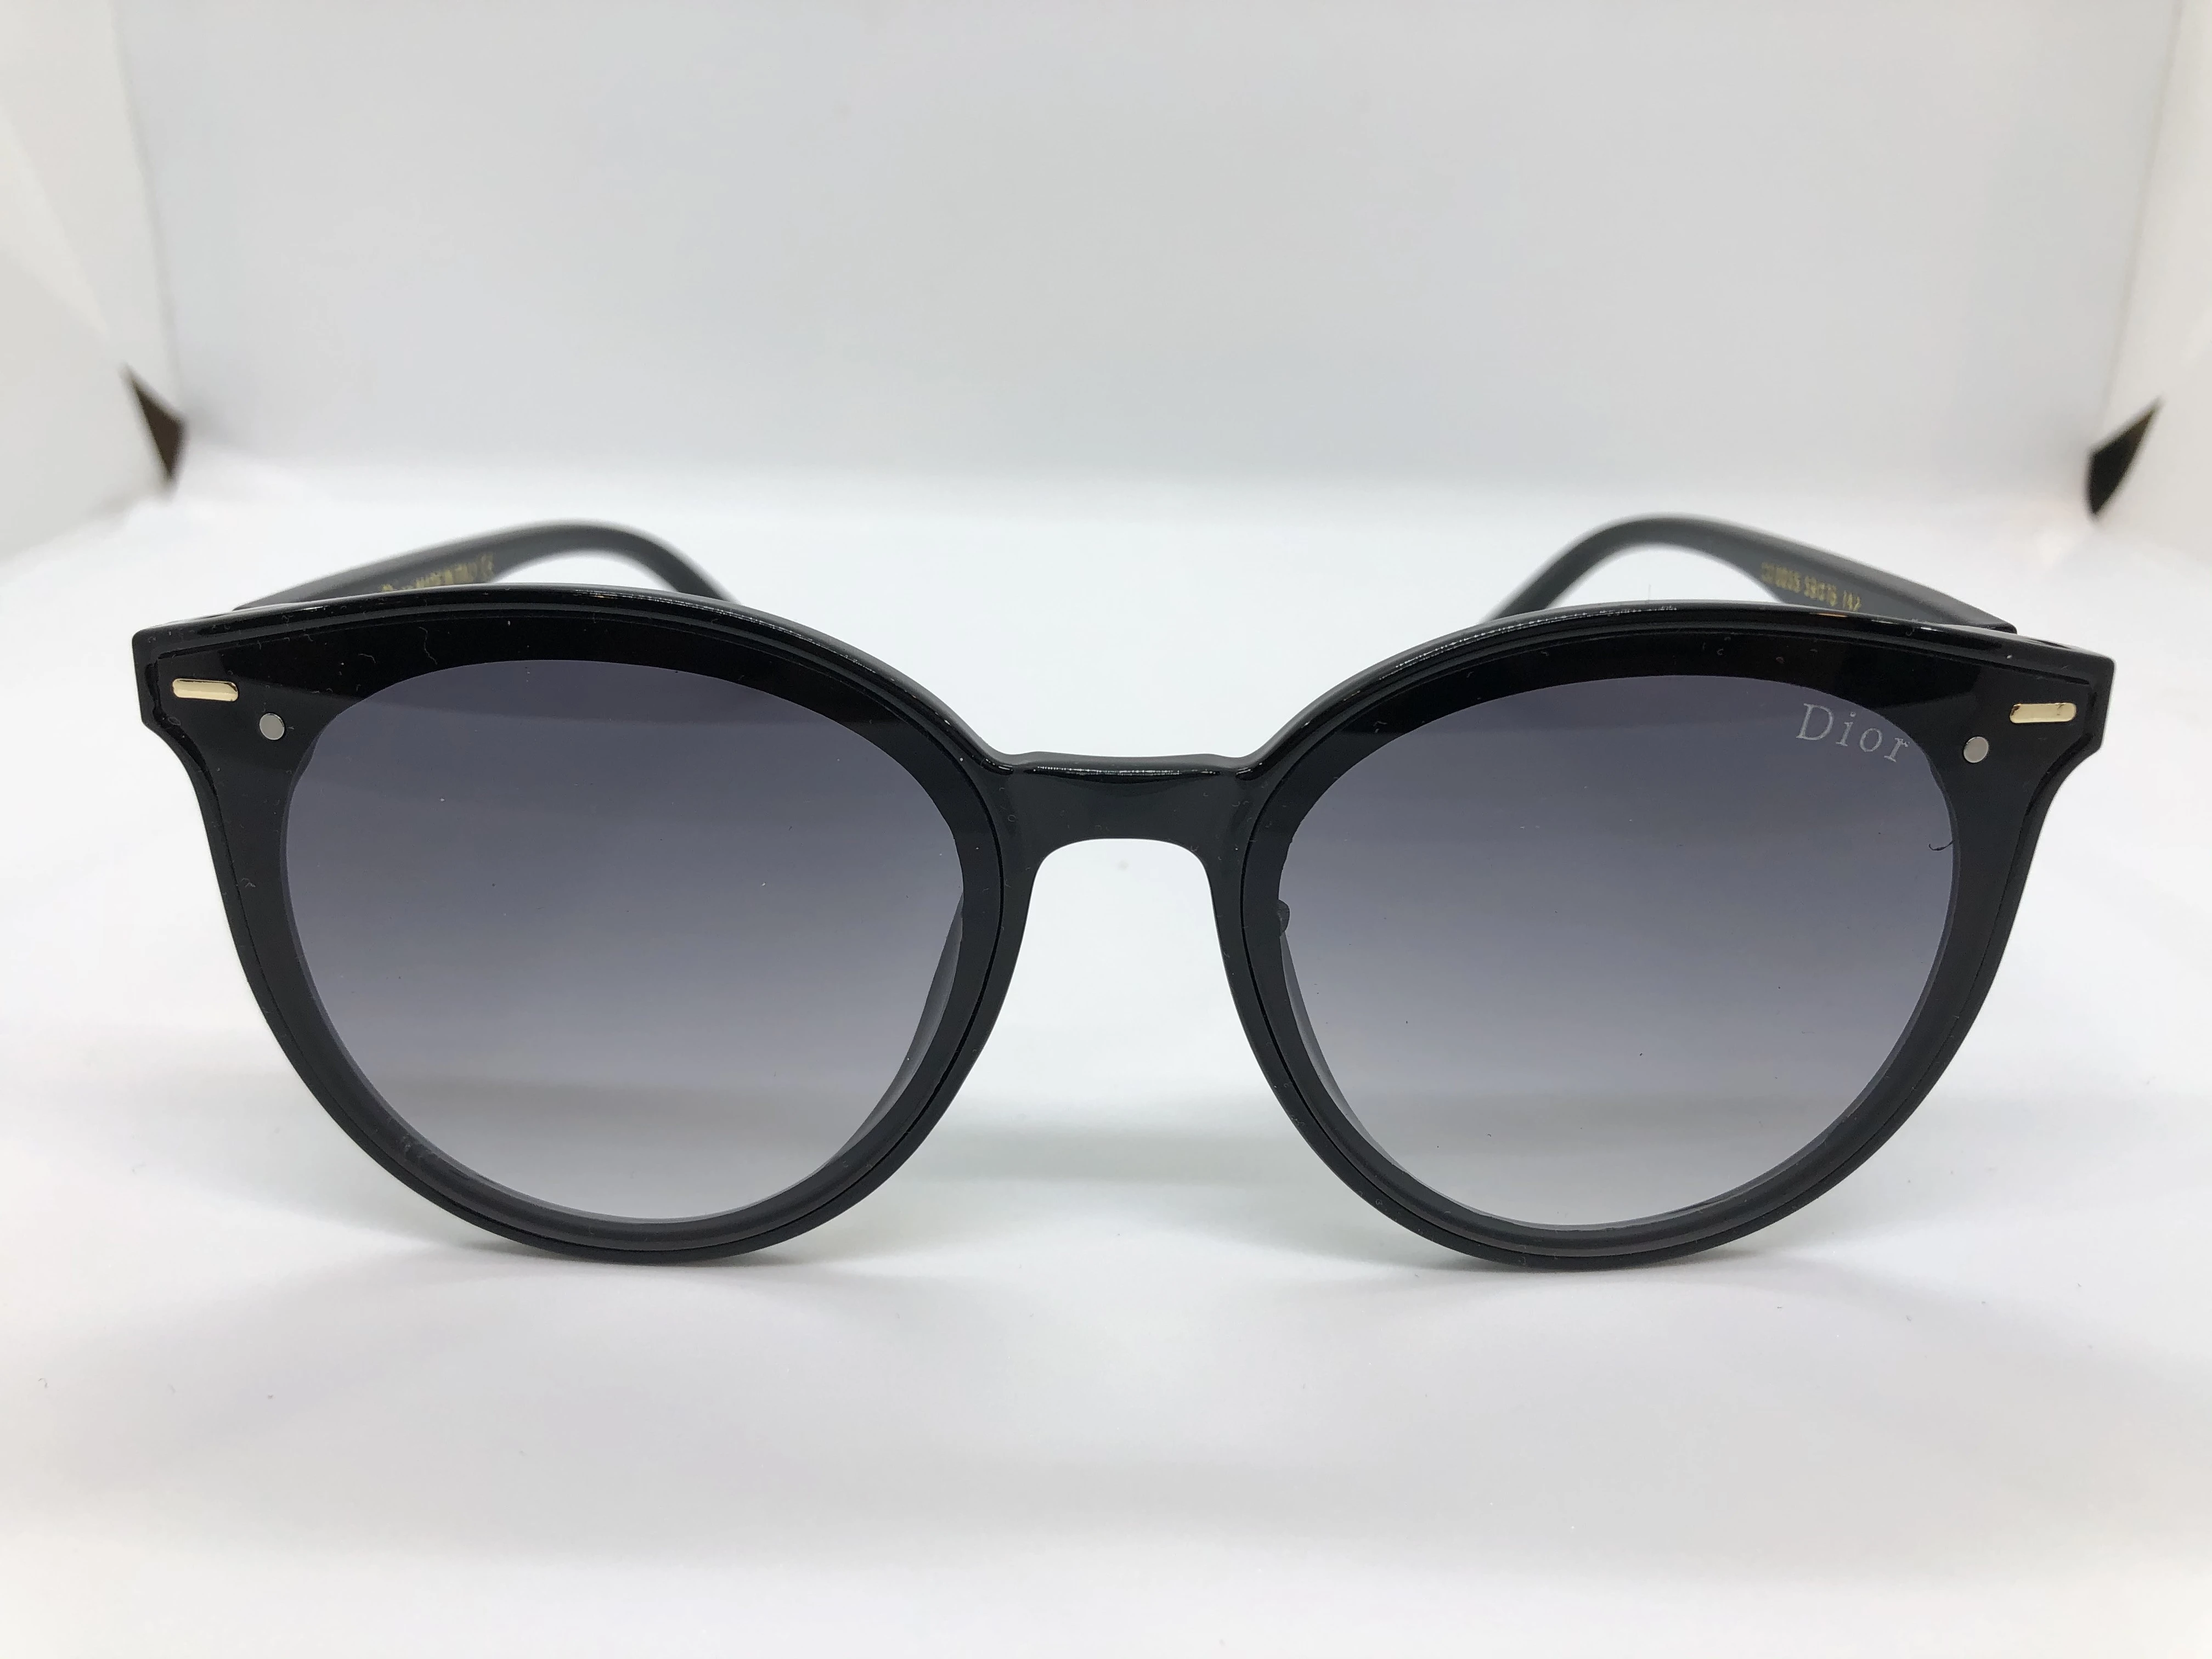 نظارة شمسية - من ديور- باطاراسود بولي كاربونات - وعدسات سوداء متدرجة - وزراع اسود بولي كاربونات - بشعارالماركة ذهبي - للرجال